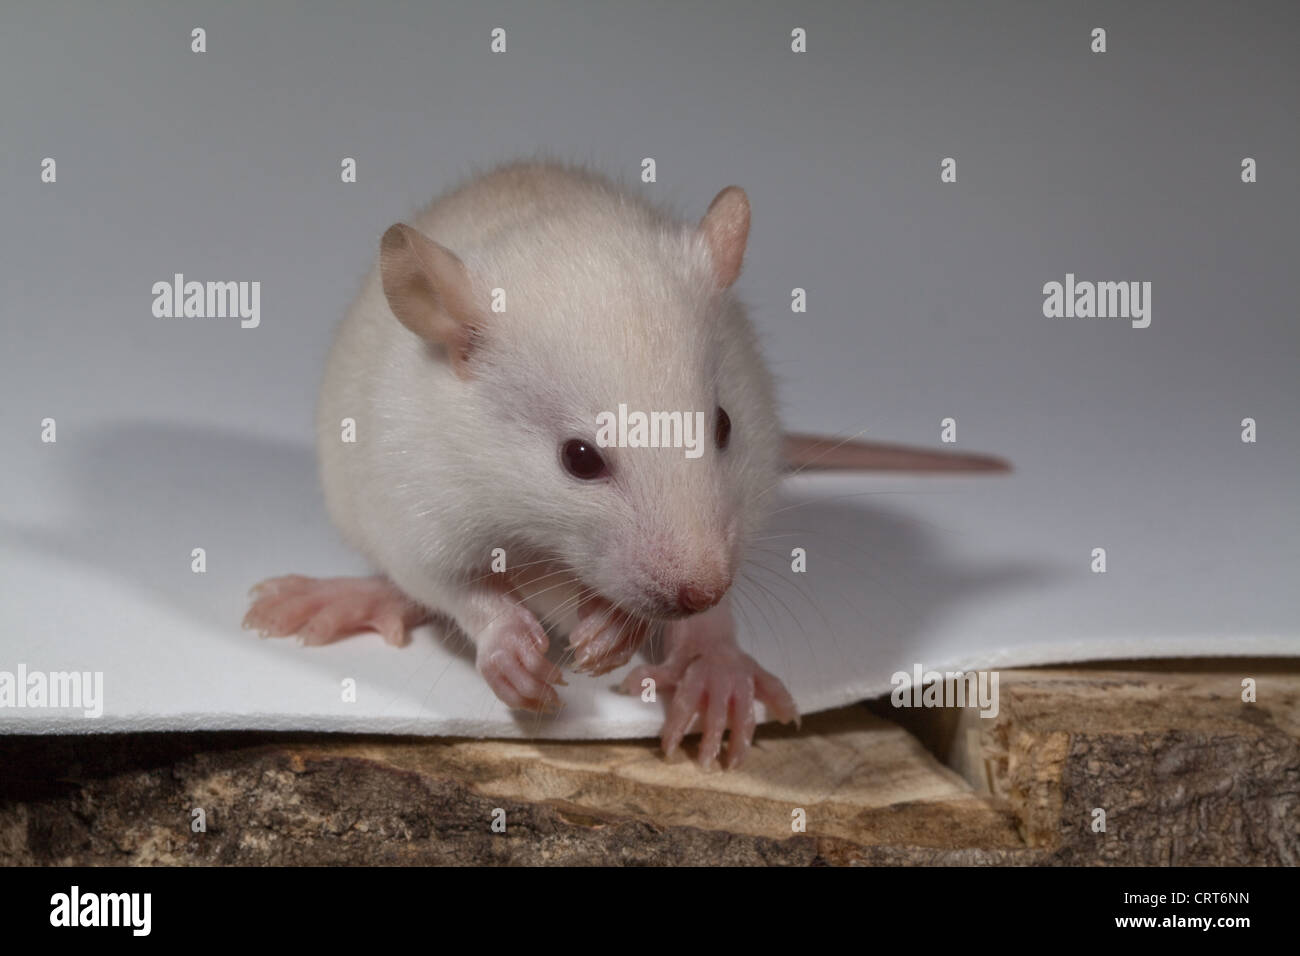 Jeune rat blanc (Rattus norvegicus). Albino. Défaut de pigmentation dans la peau, la fourrure et les yeux. Ces dernières semblent rose. Banque D'Images